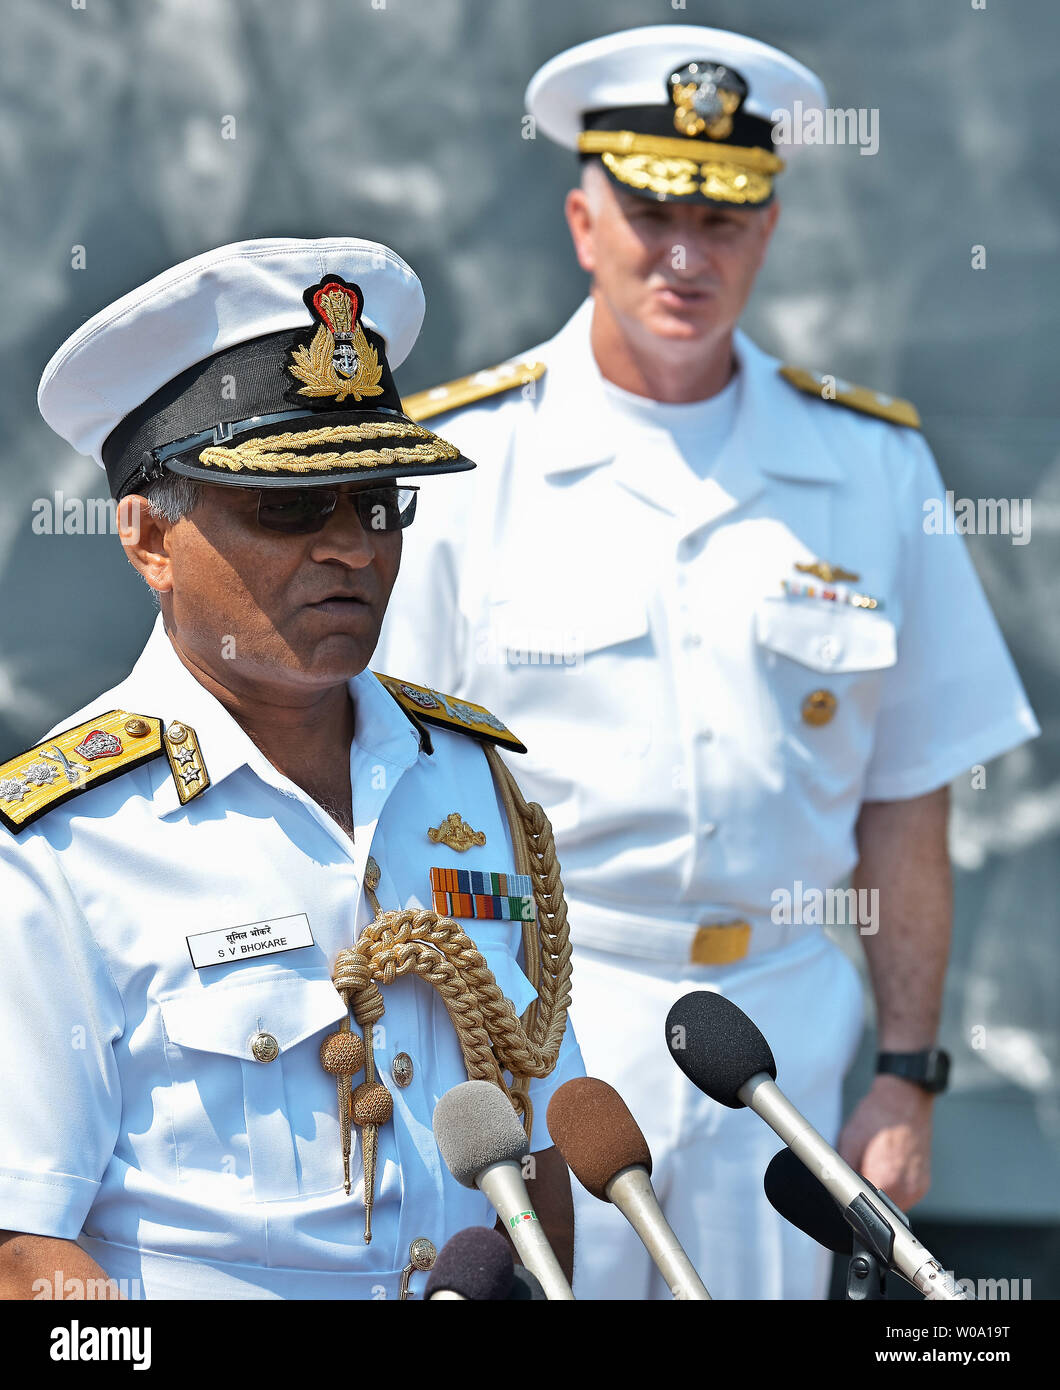 L'ammiraglio posteriore Soonil Bhokare V(L), Commander, Est della Flotta della Marina indiana parla durante una conferenza stampa presso U.S. Le attività della flotta Sasebo, Prefettura di Nagasaki, Giappone il 10 giugno 2016. Foto di Keizo Mori/UPI Foto Stock